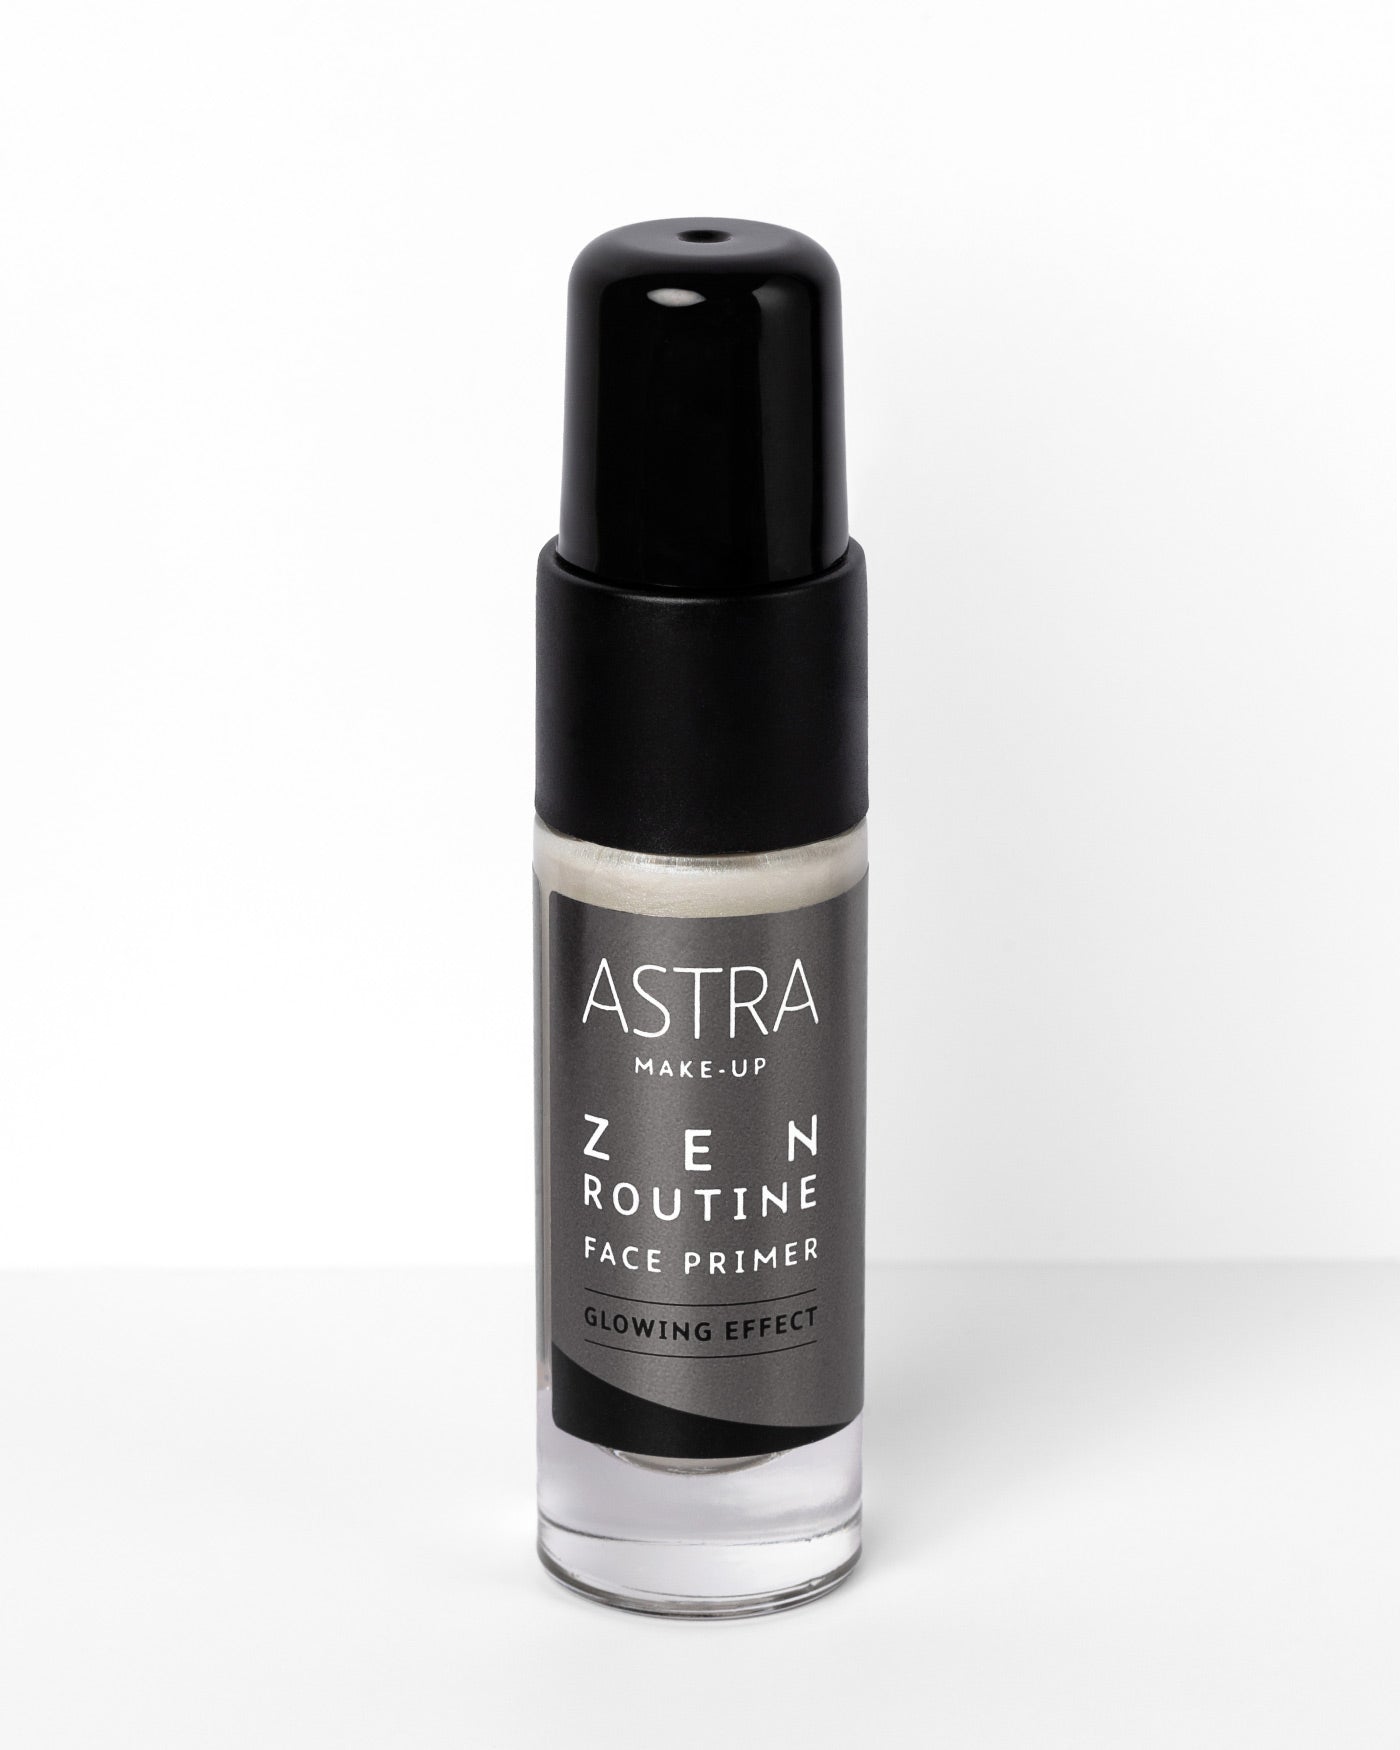 ZEN ROUTINE FACE PRIMER GLOWING EFFECT - Zen Routine - Astra Make-Up